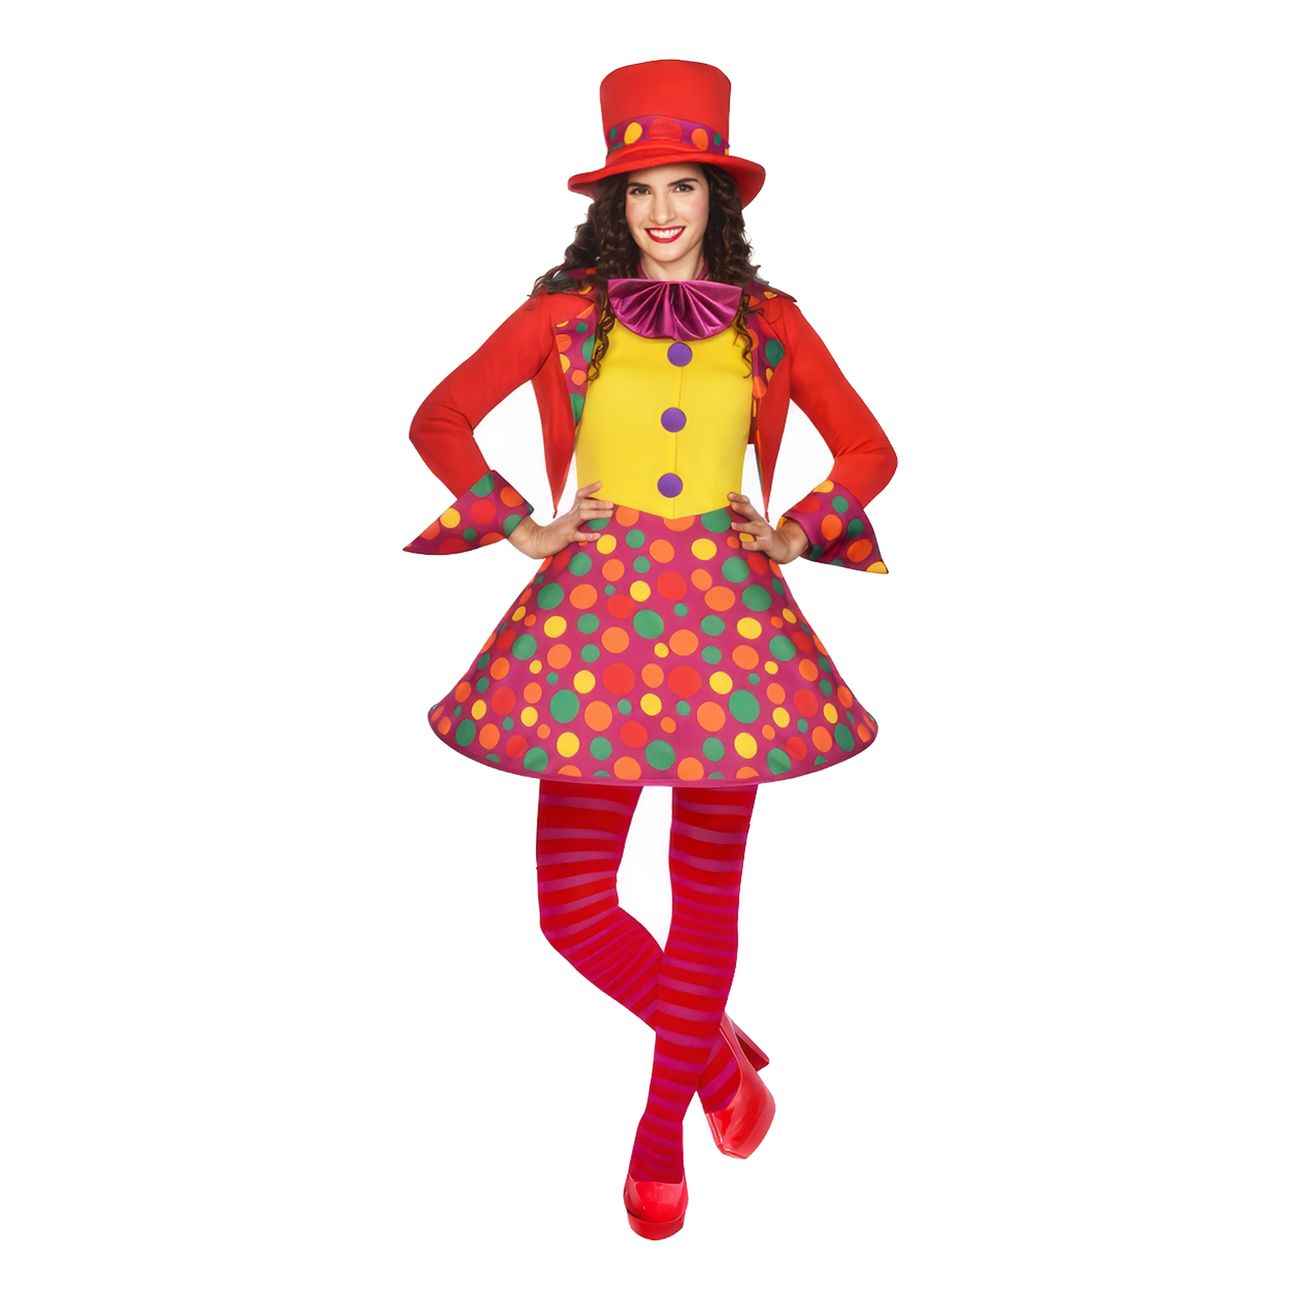 fargglad-clown-klanning-maskeraddrakt-95808-1